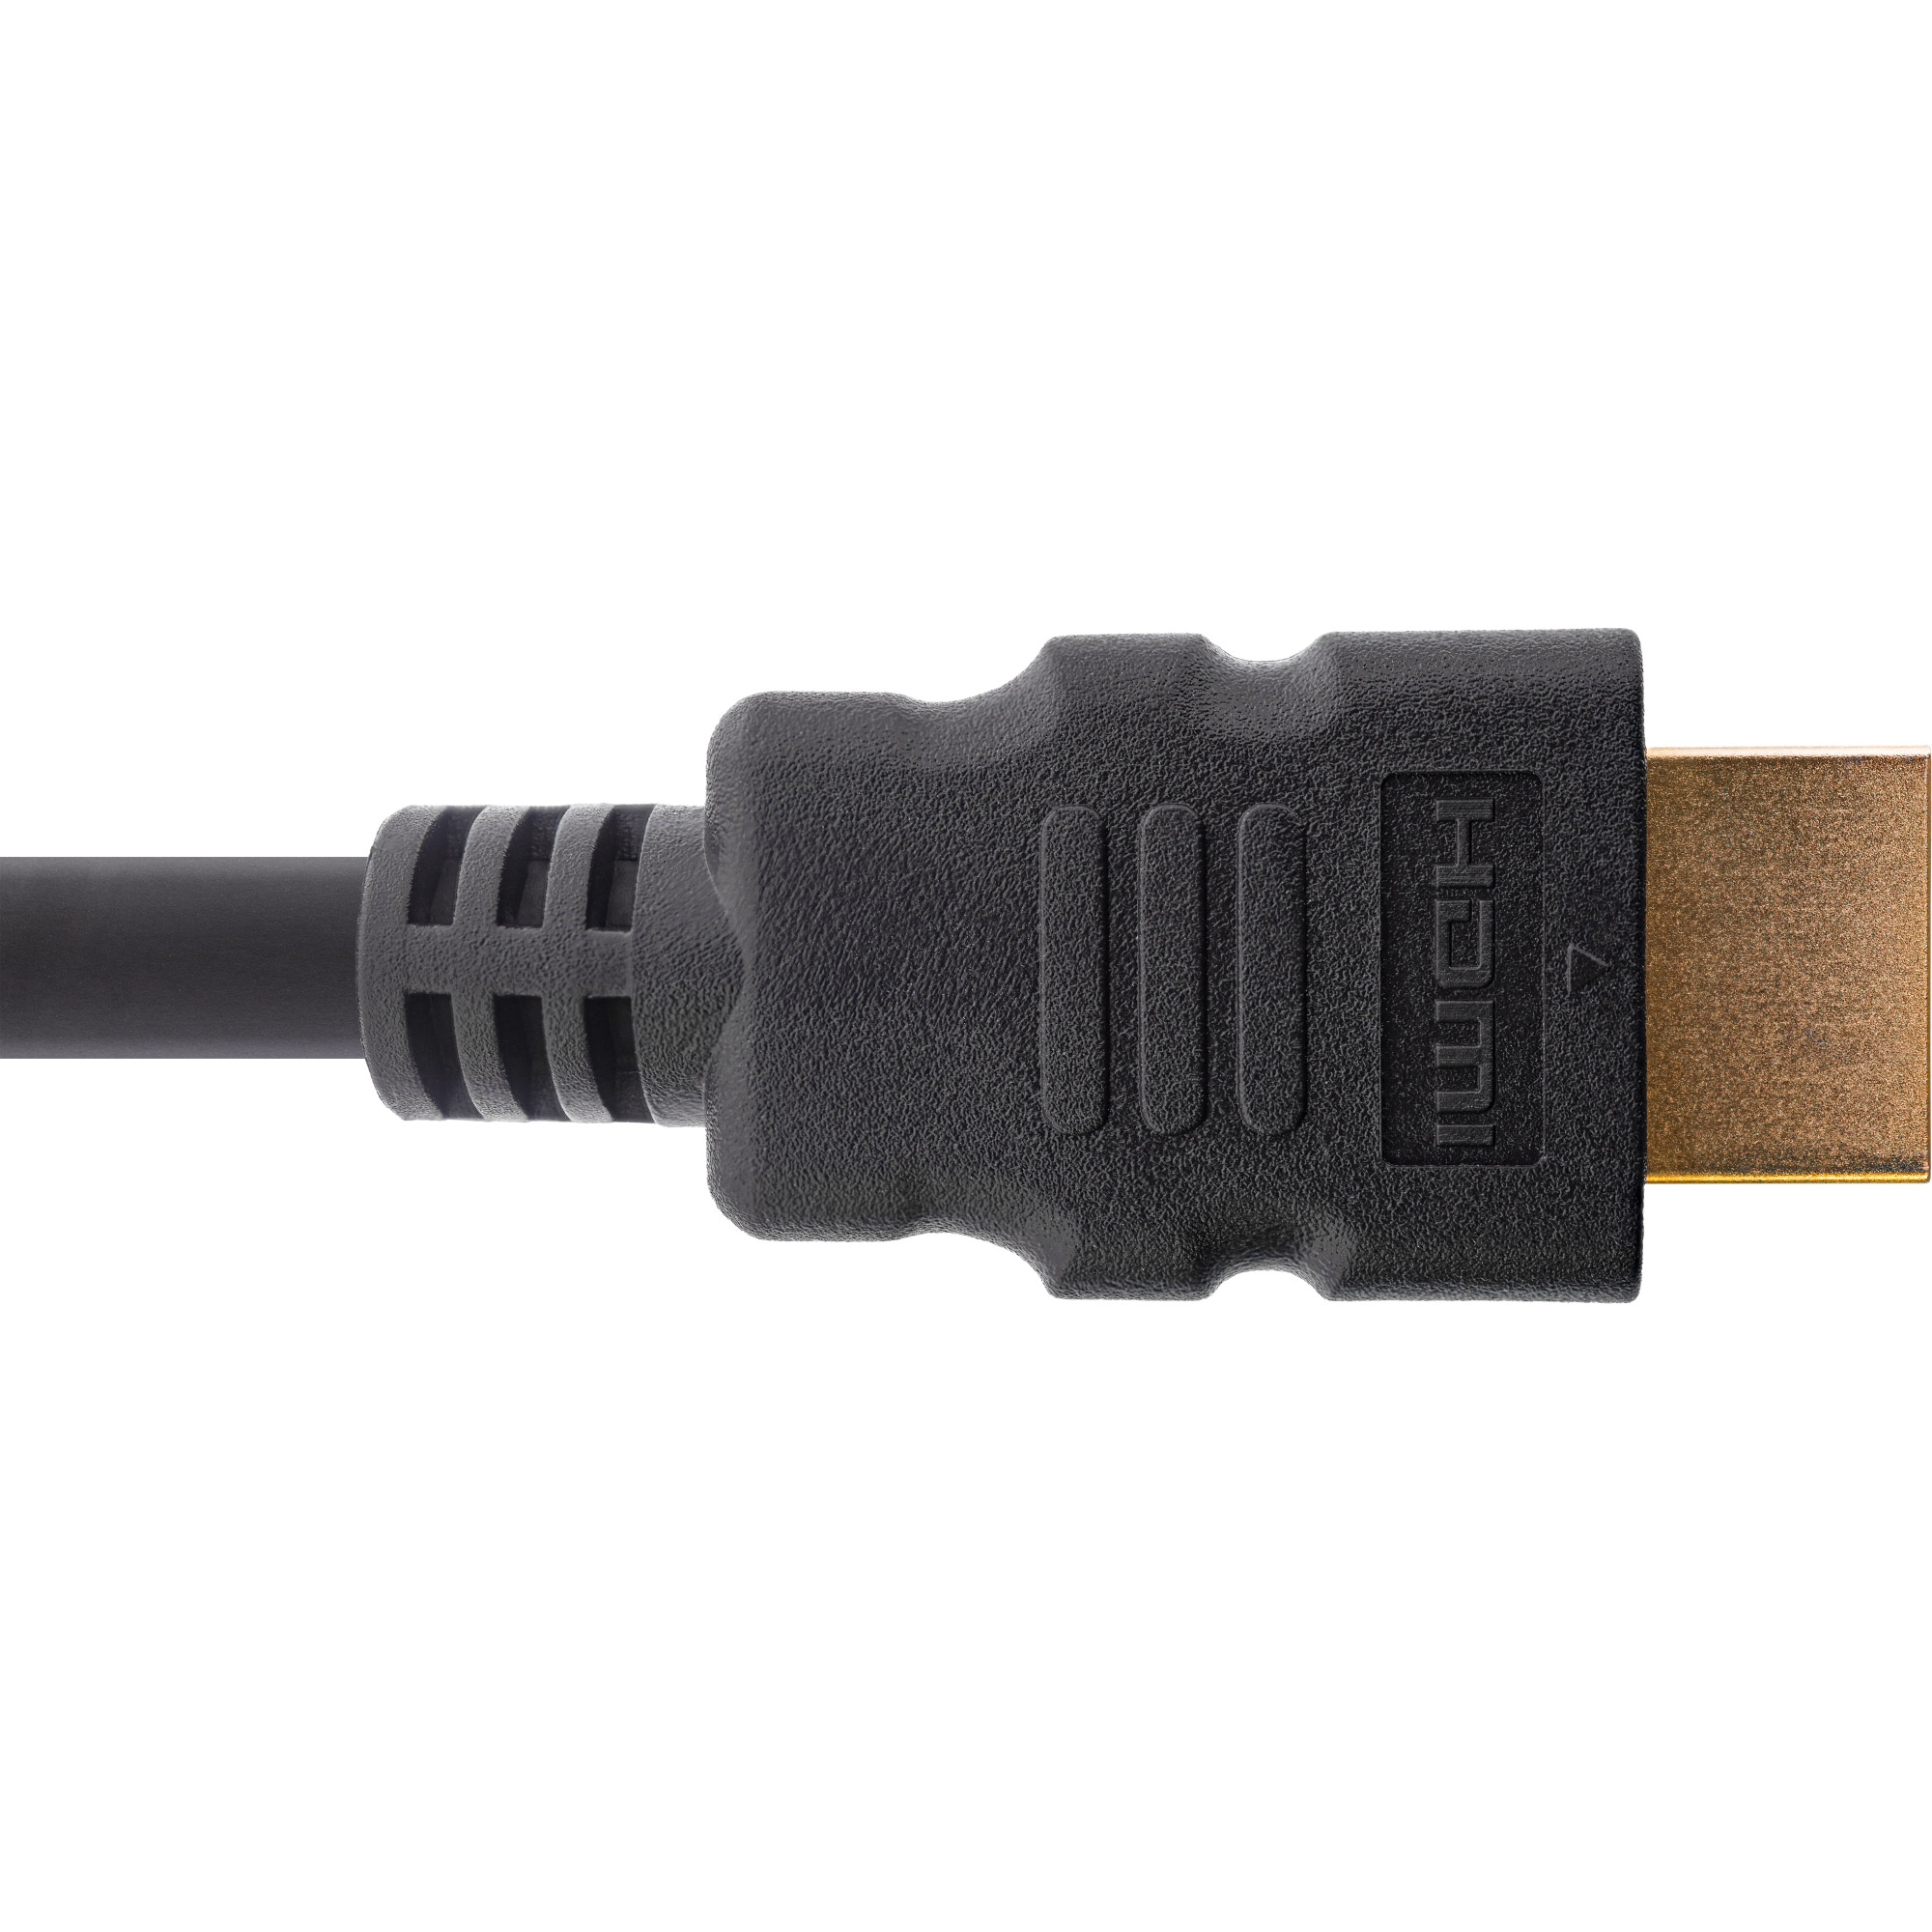 Ultra 8K4K, Kabel, High HDMI Speed / Zertifiziertes INLINE HDMI Stecker InLine® -